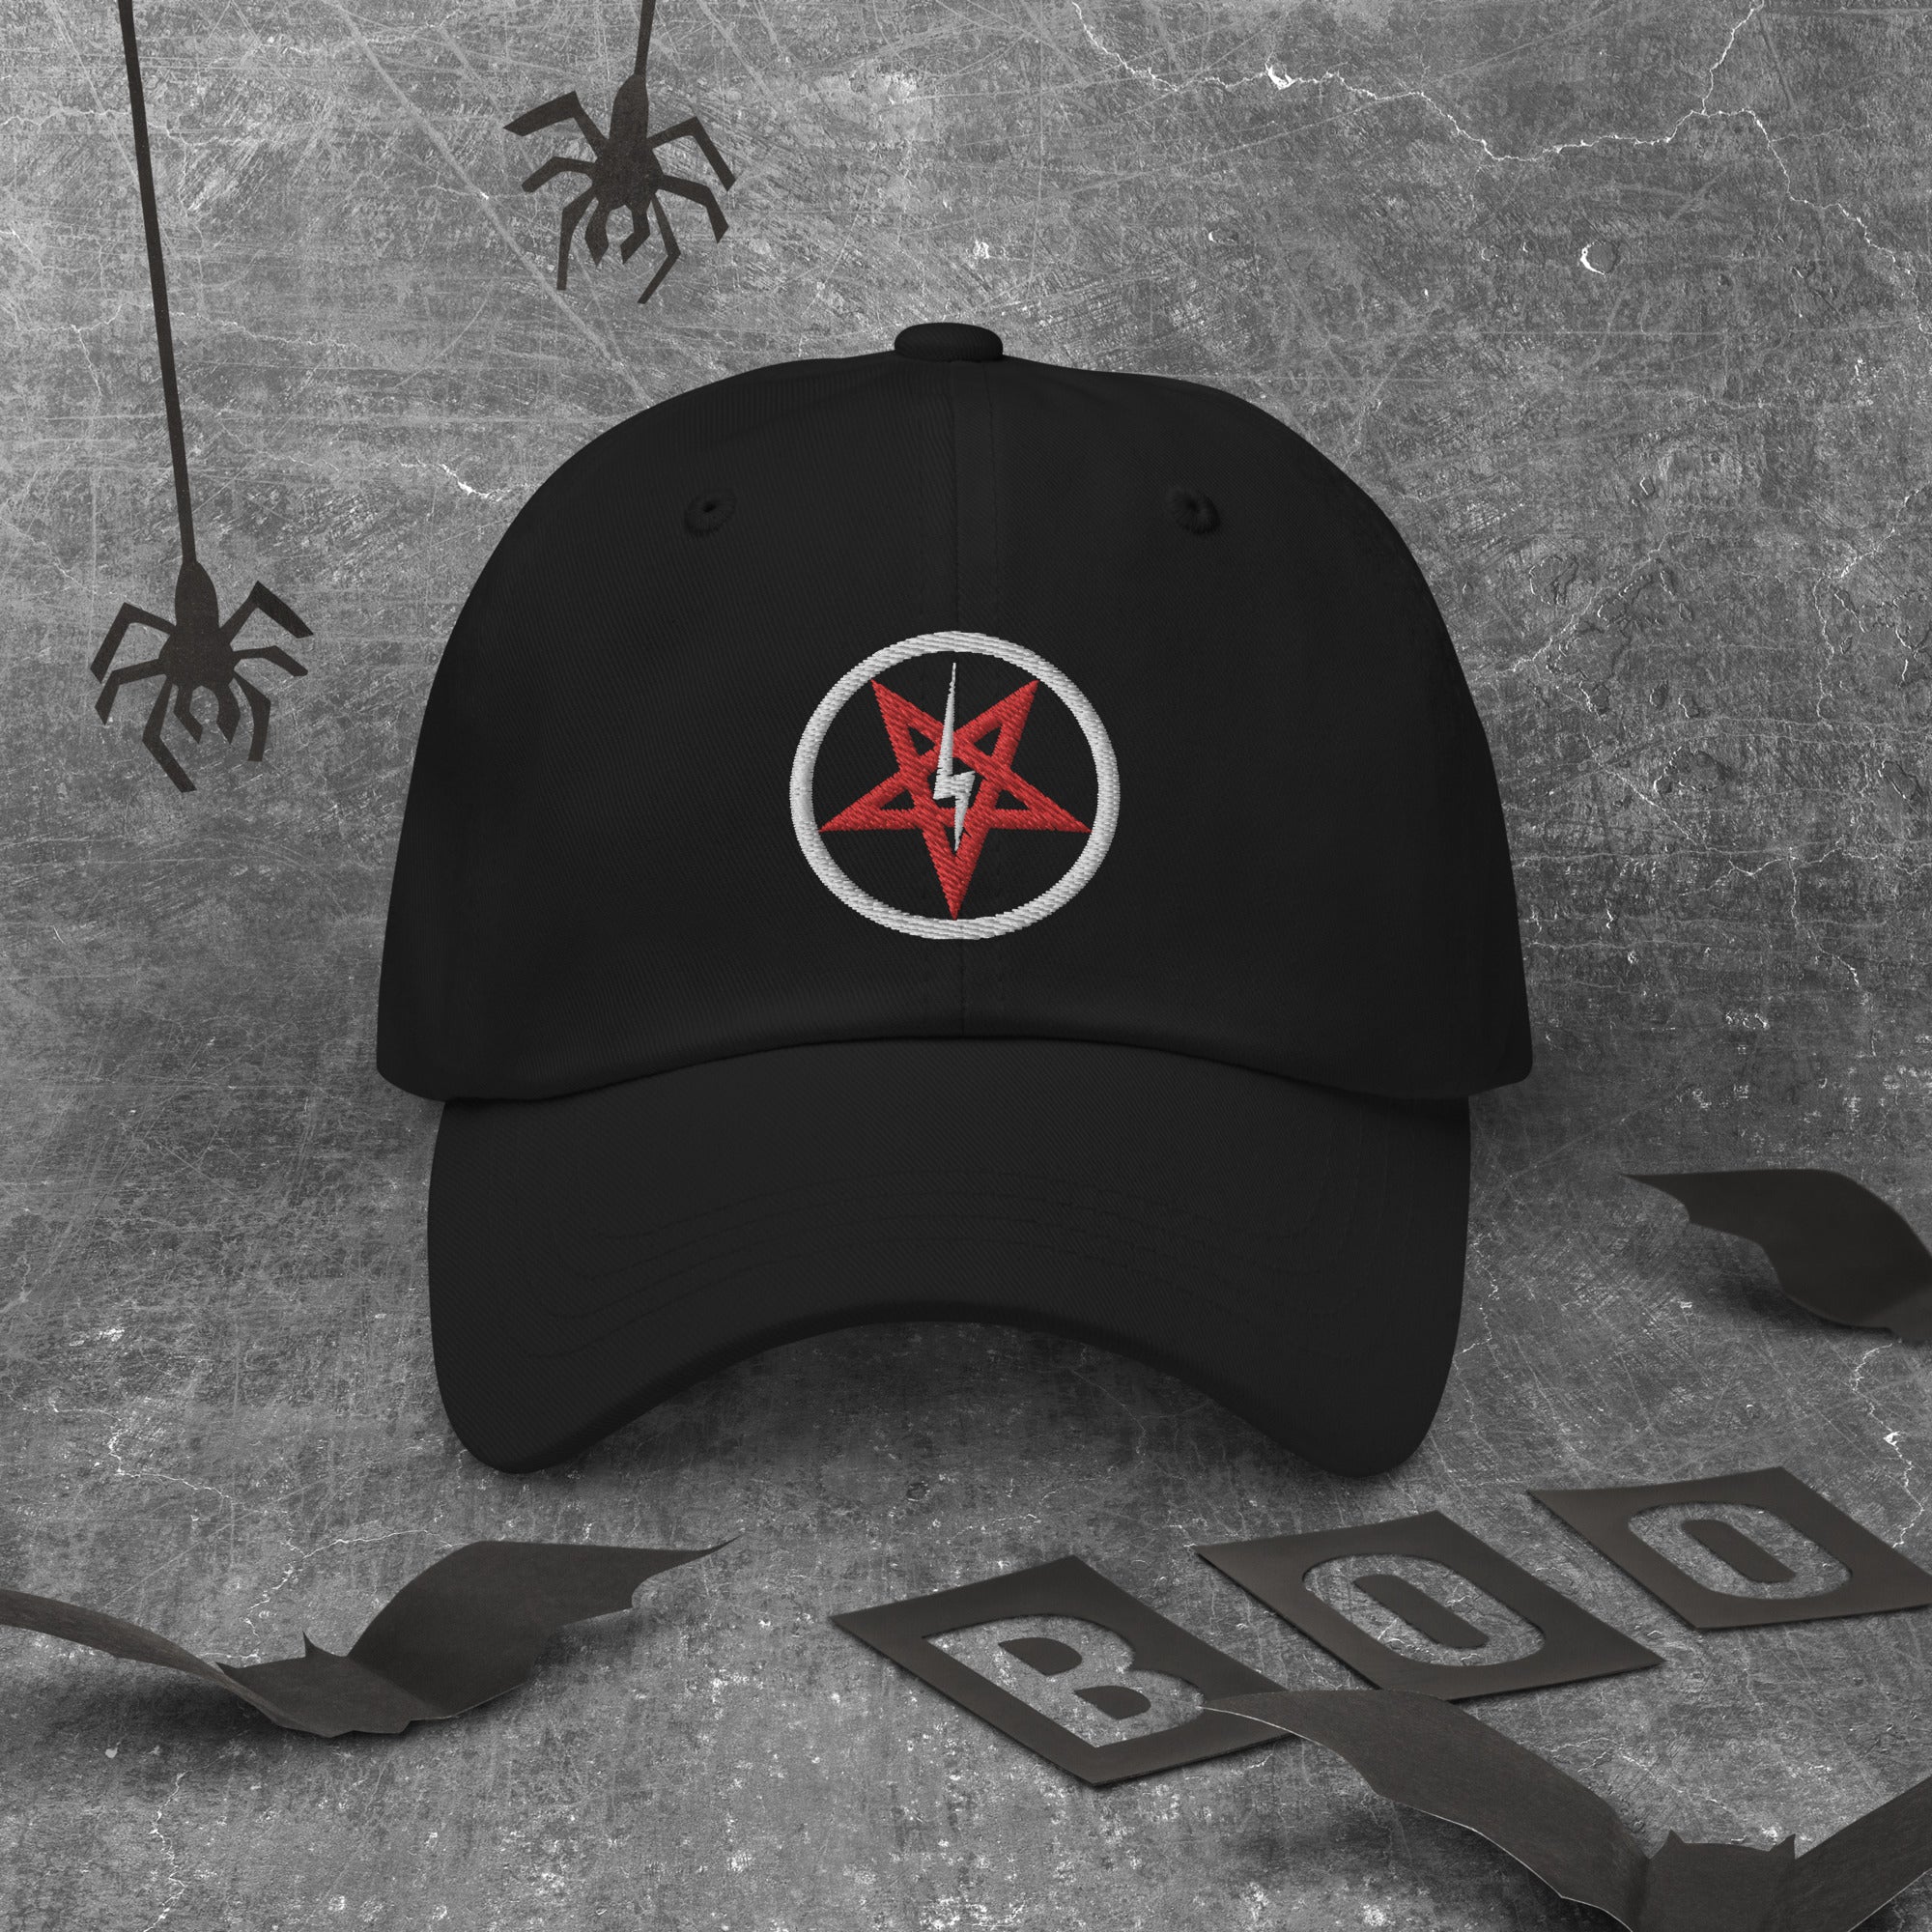 Lightning Bolt Inverted Pentagram Occult Symbol Embroidered Baseball Cap Dad hat - Edge of Life Designs